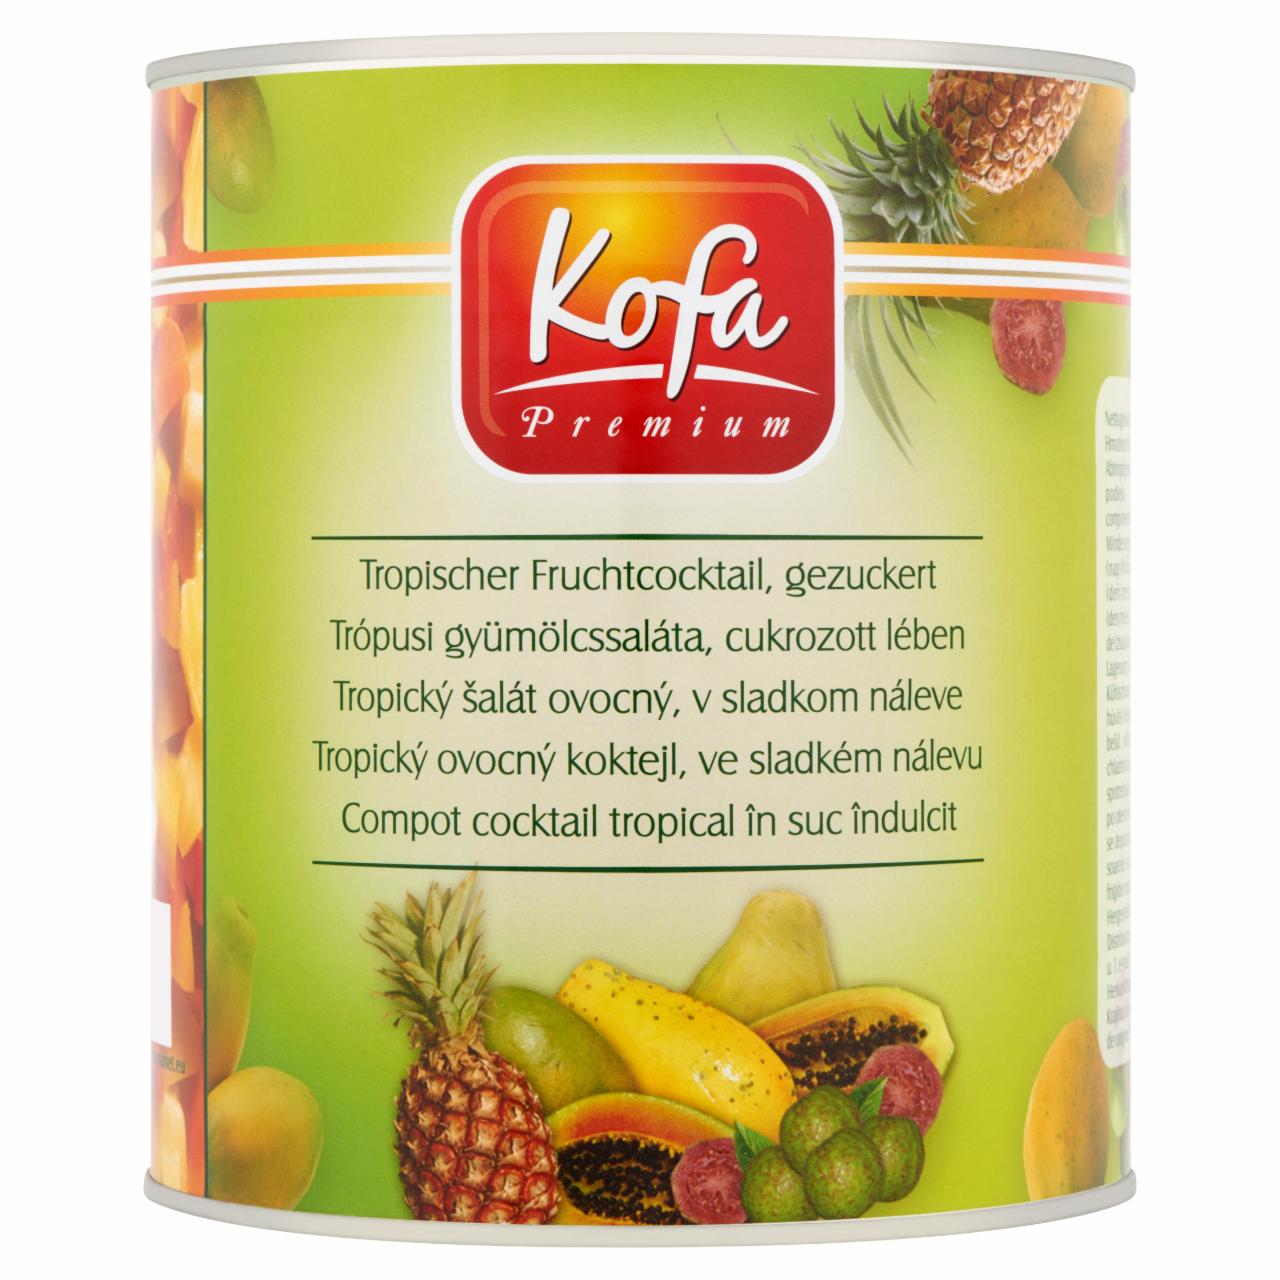 Képek - Kofa Premium trópusi gyümölcssaláta, cukrozott lében 3050 g